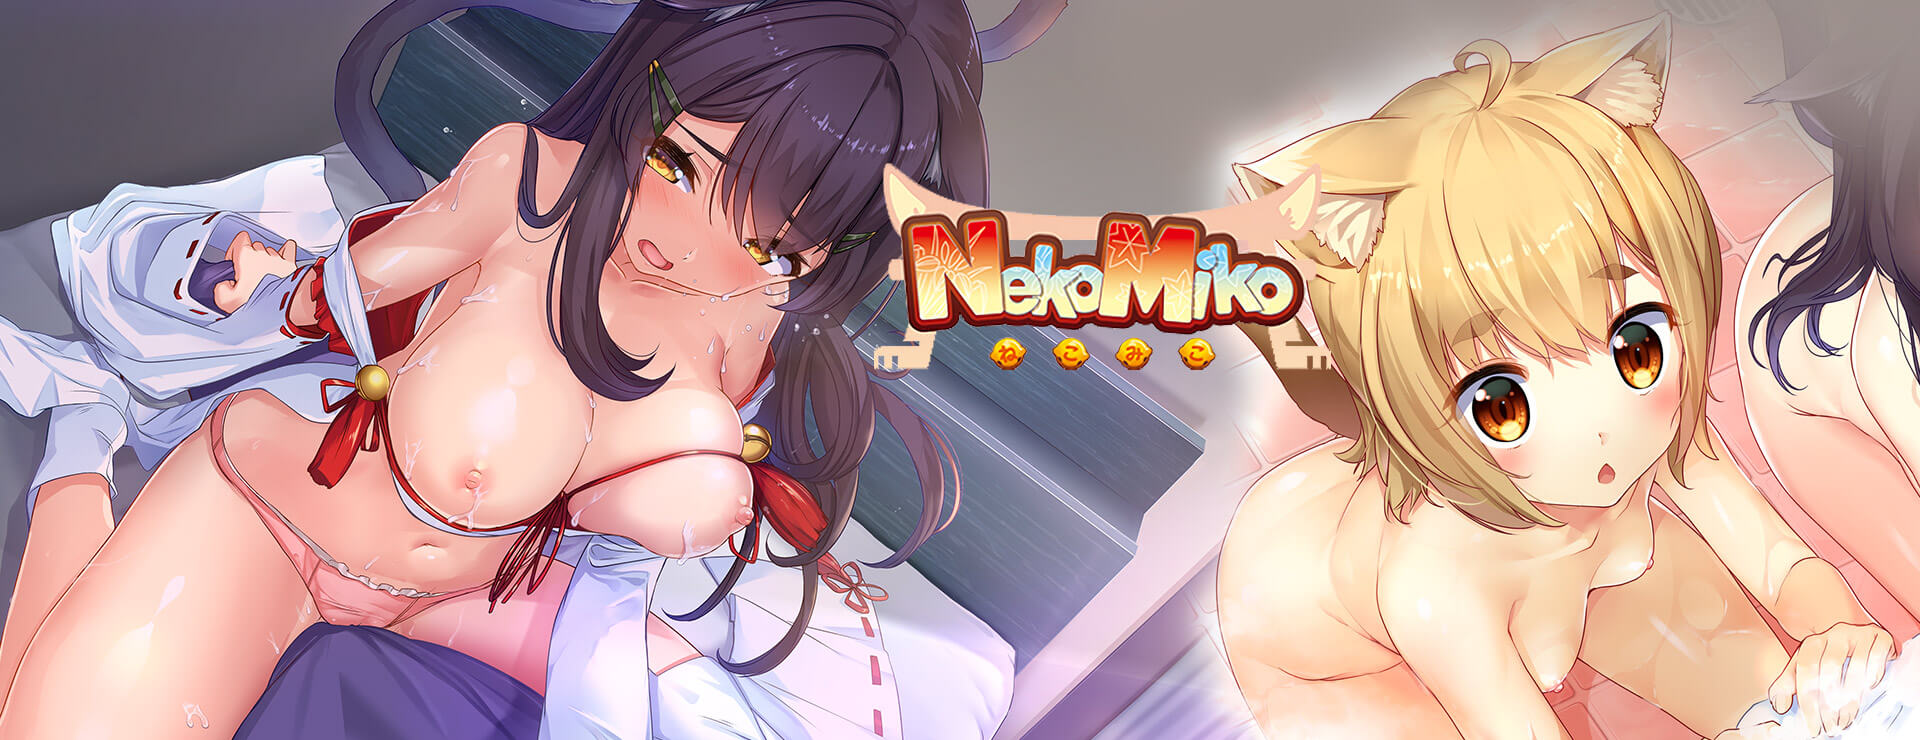 Neko Miko - ビジュアルノベル ゲーム